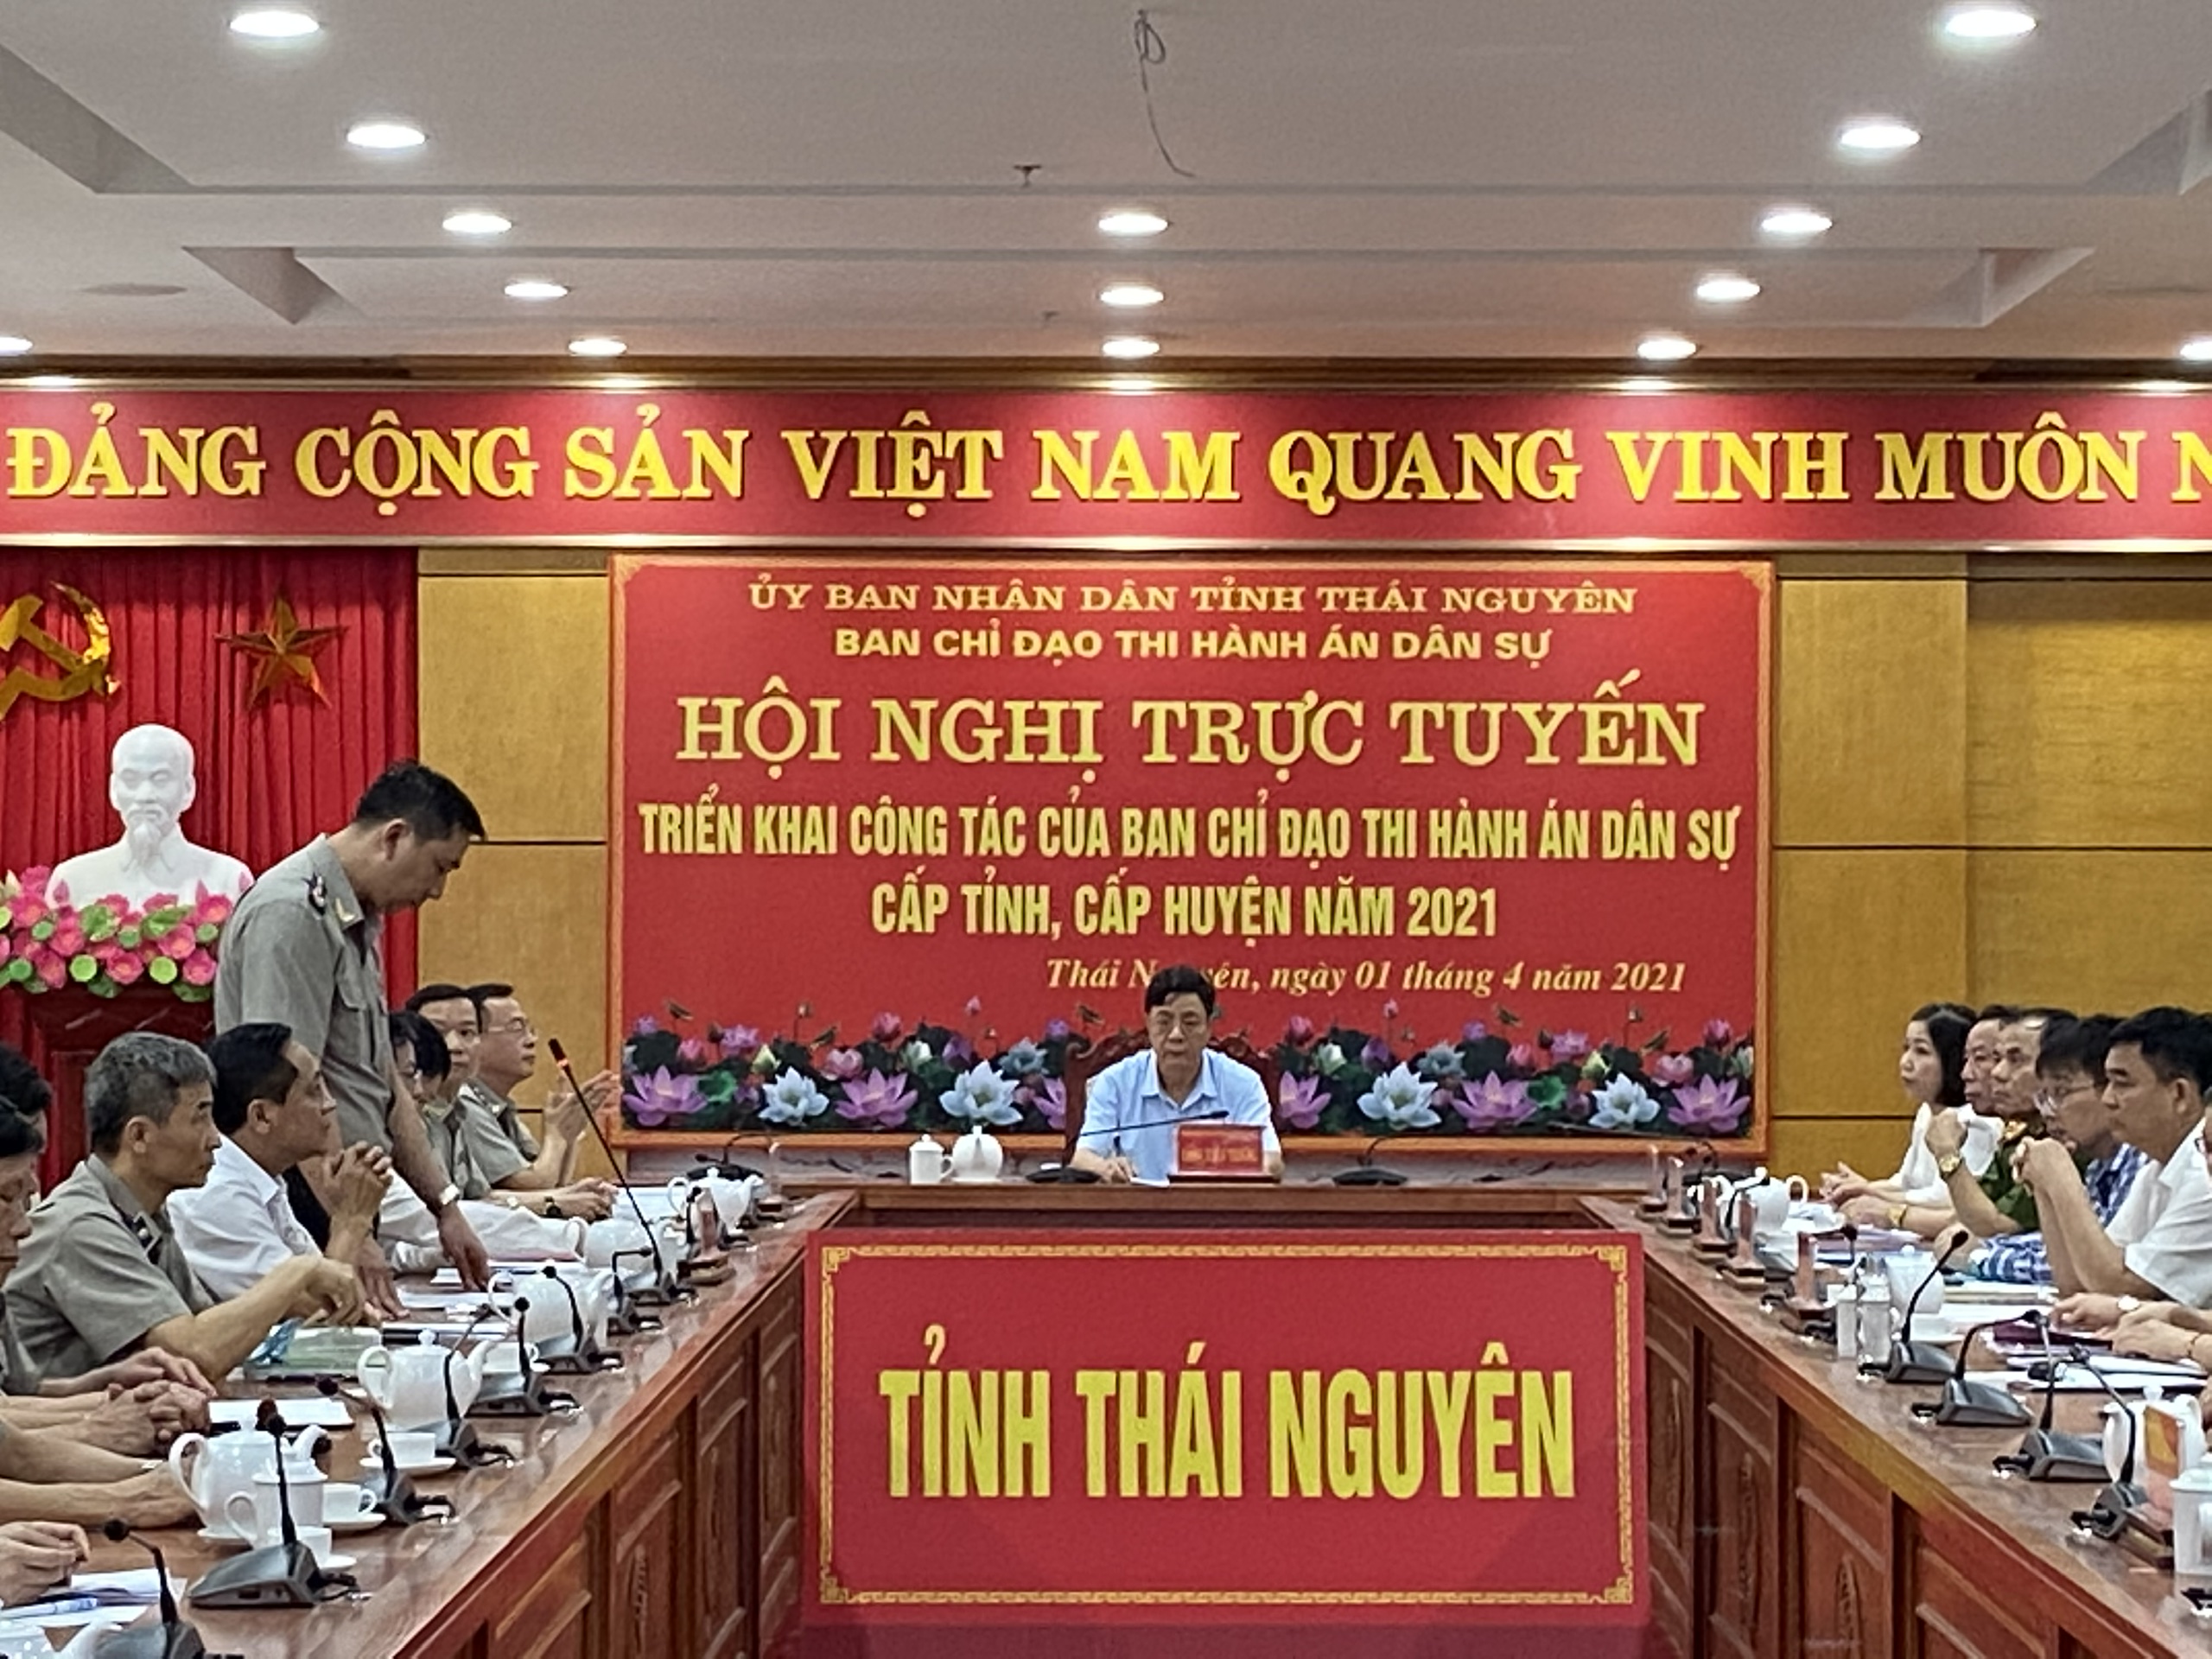 Ban chỉ đạo Thi hành án dân sự tỉnh Thái Nguyên tổ chức Hội nghị sơ kết nhiệm vụ 6 tháng đầu năm và triển khai nhiệm vụ trọng tâm công tác 6 tháng cuối năm năm 2019